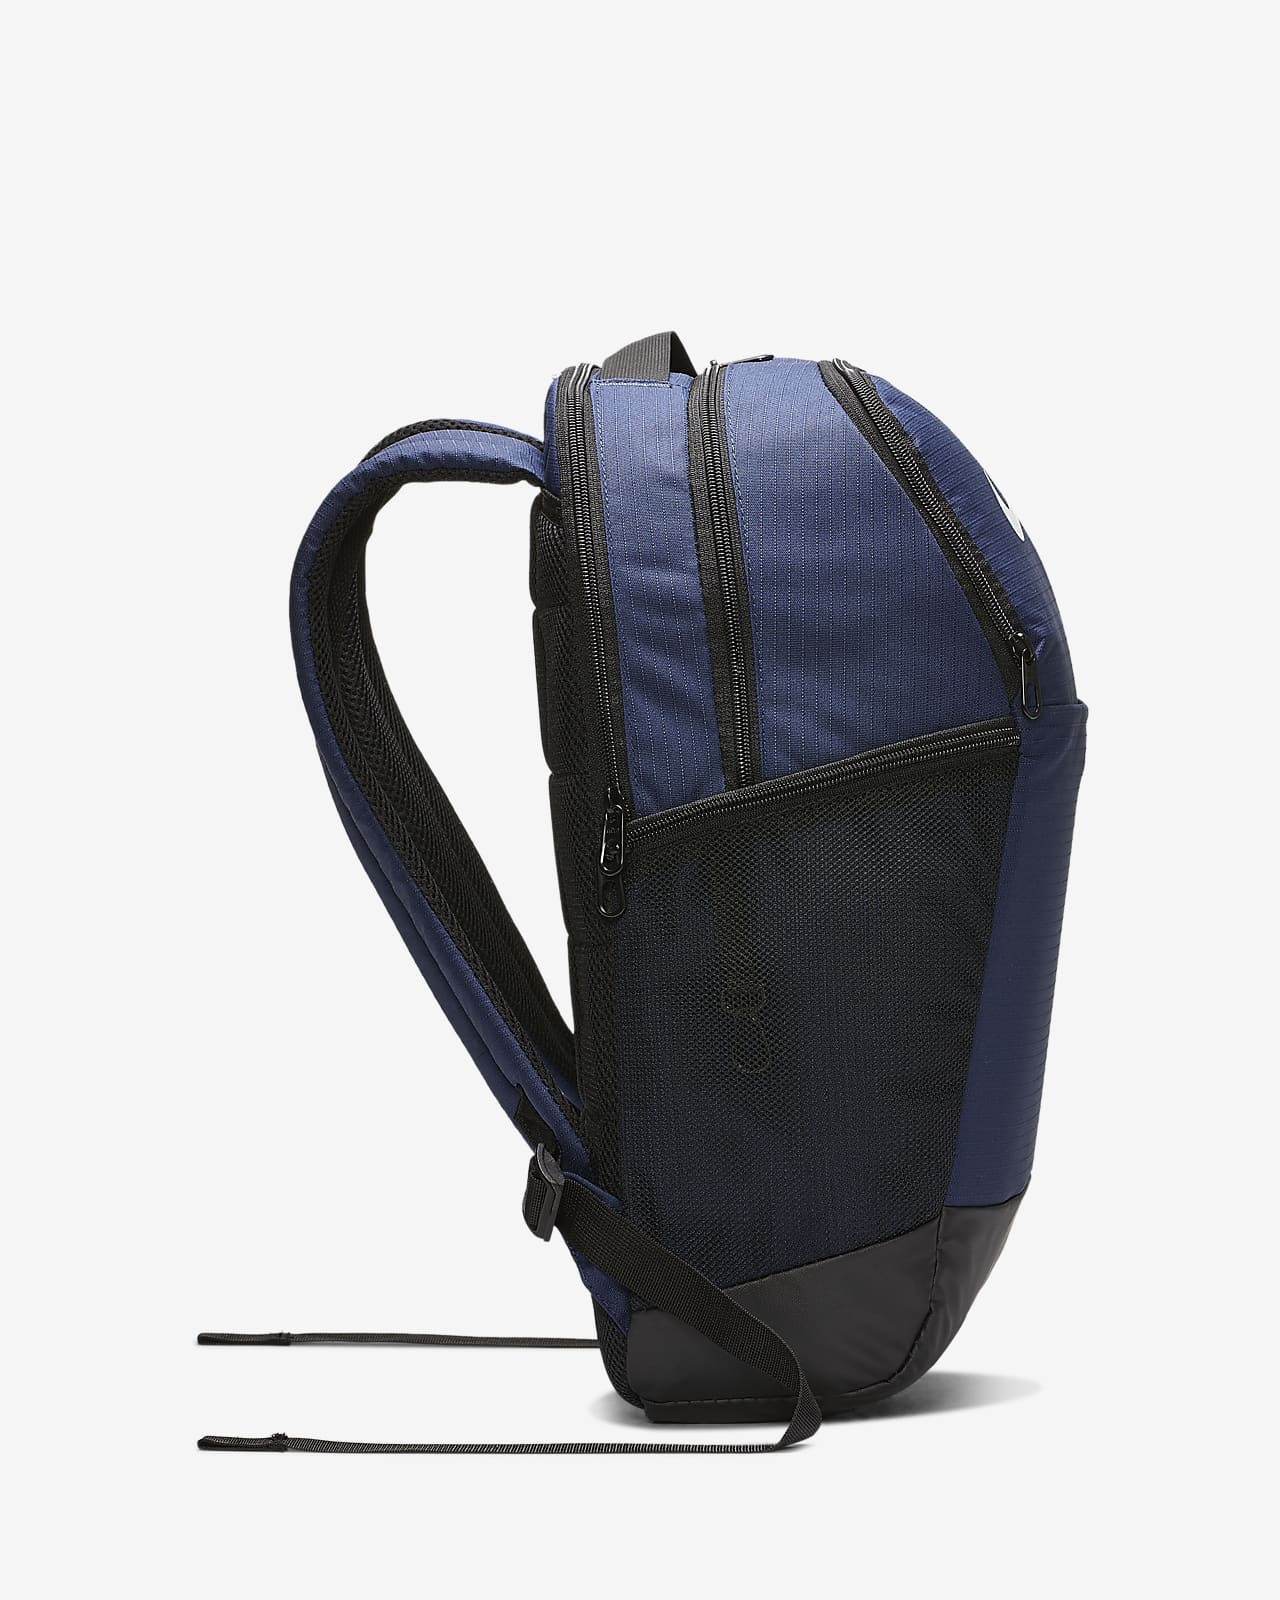 nike backpack dimensions